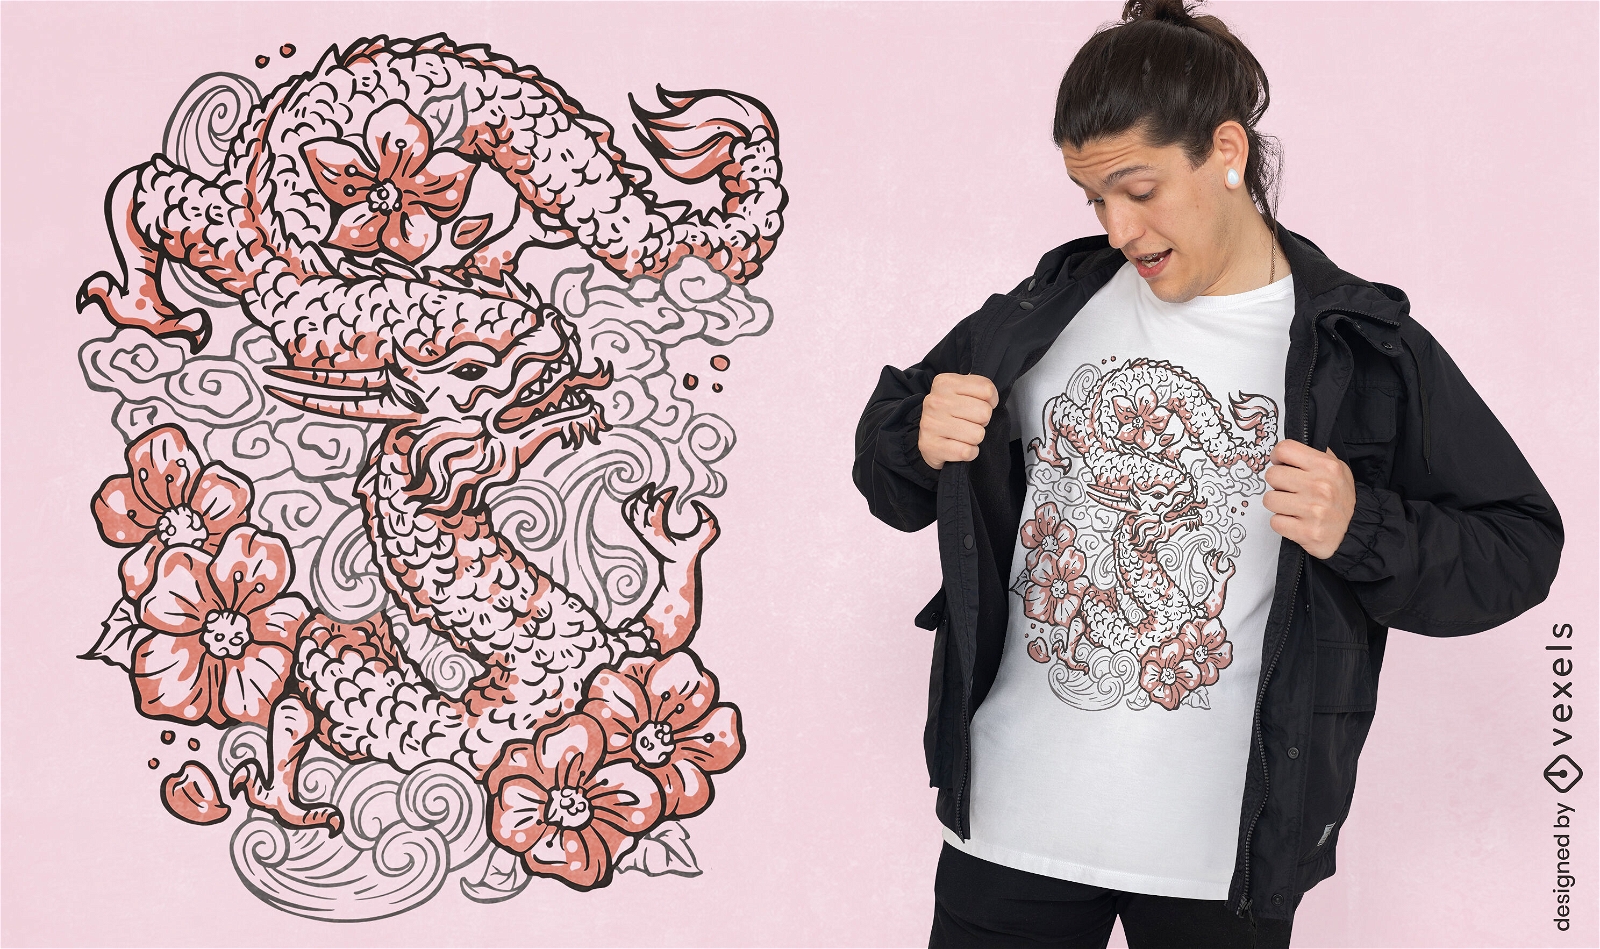 Orientalisches T-Shirt-Design mit Blumendrachen